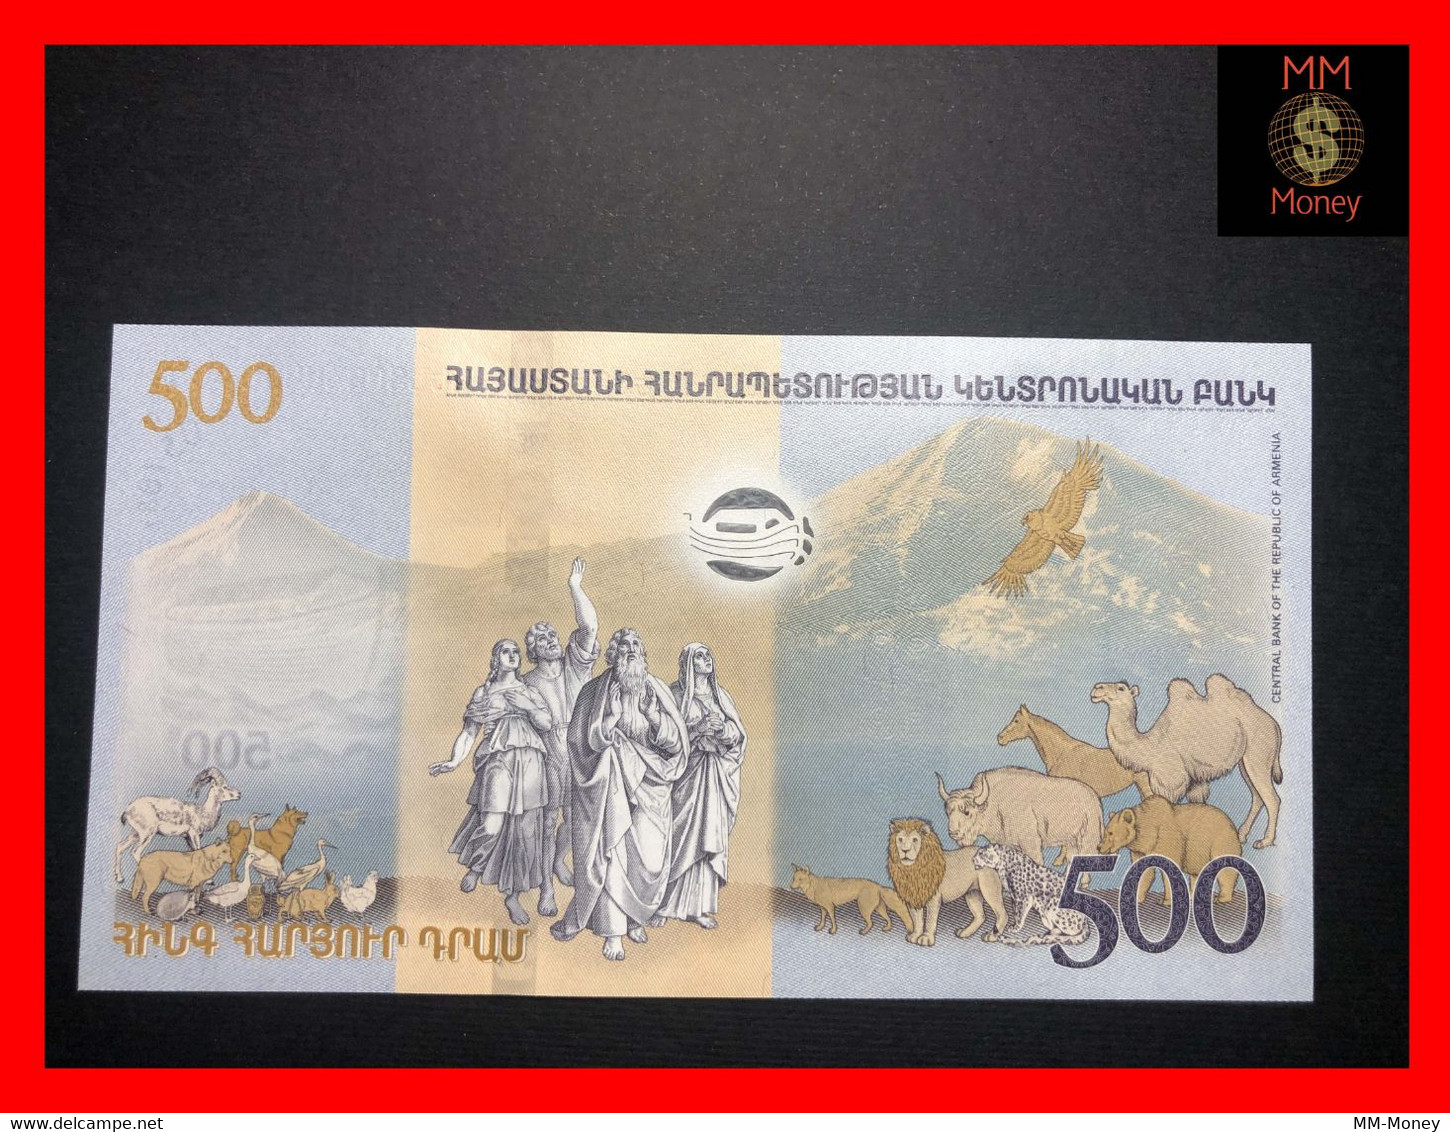 ARMENIA 500 Dram 2017 P. 60 *COMMEMORATIVE* UNC   [MM-Money] - Armenia